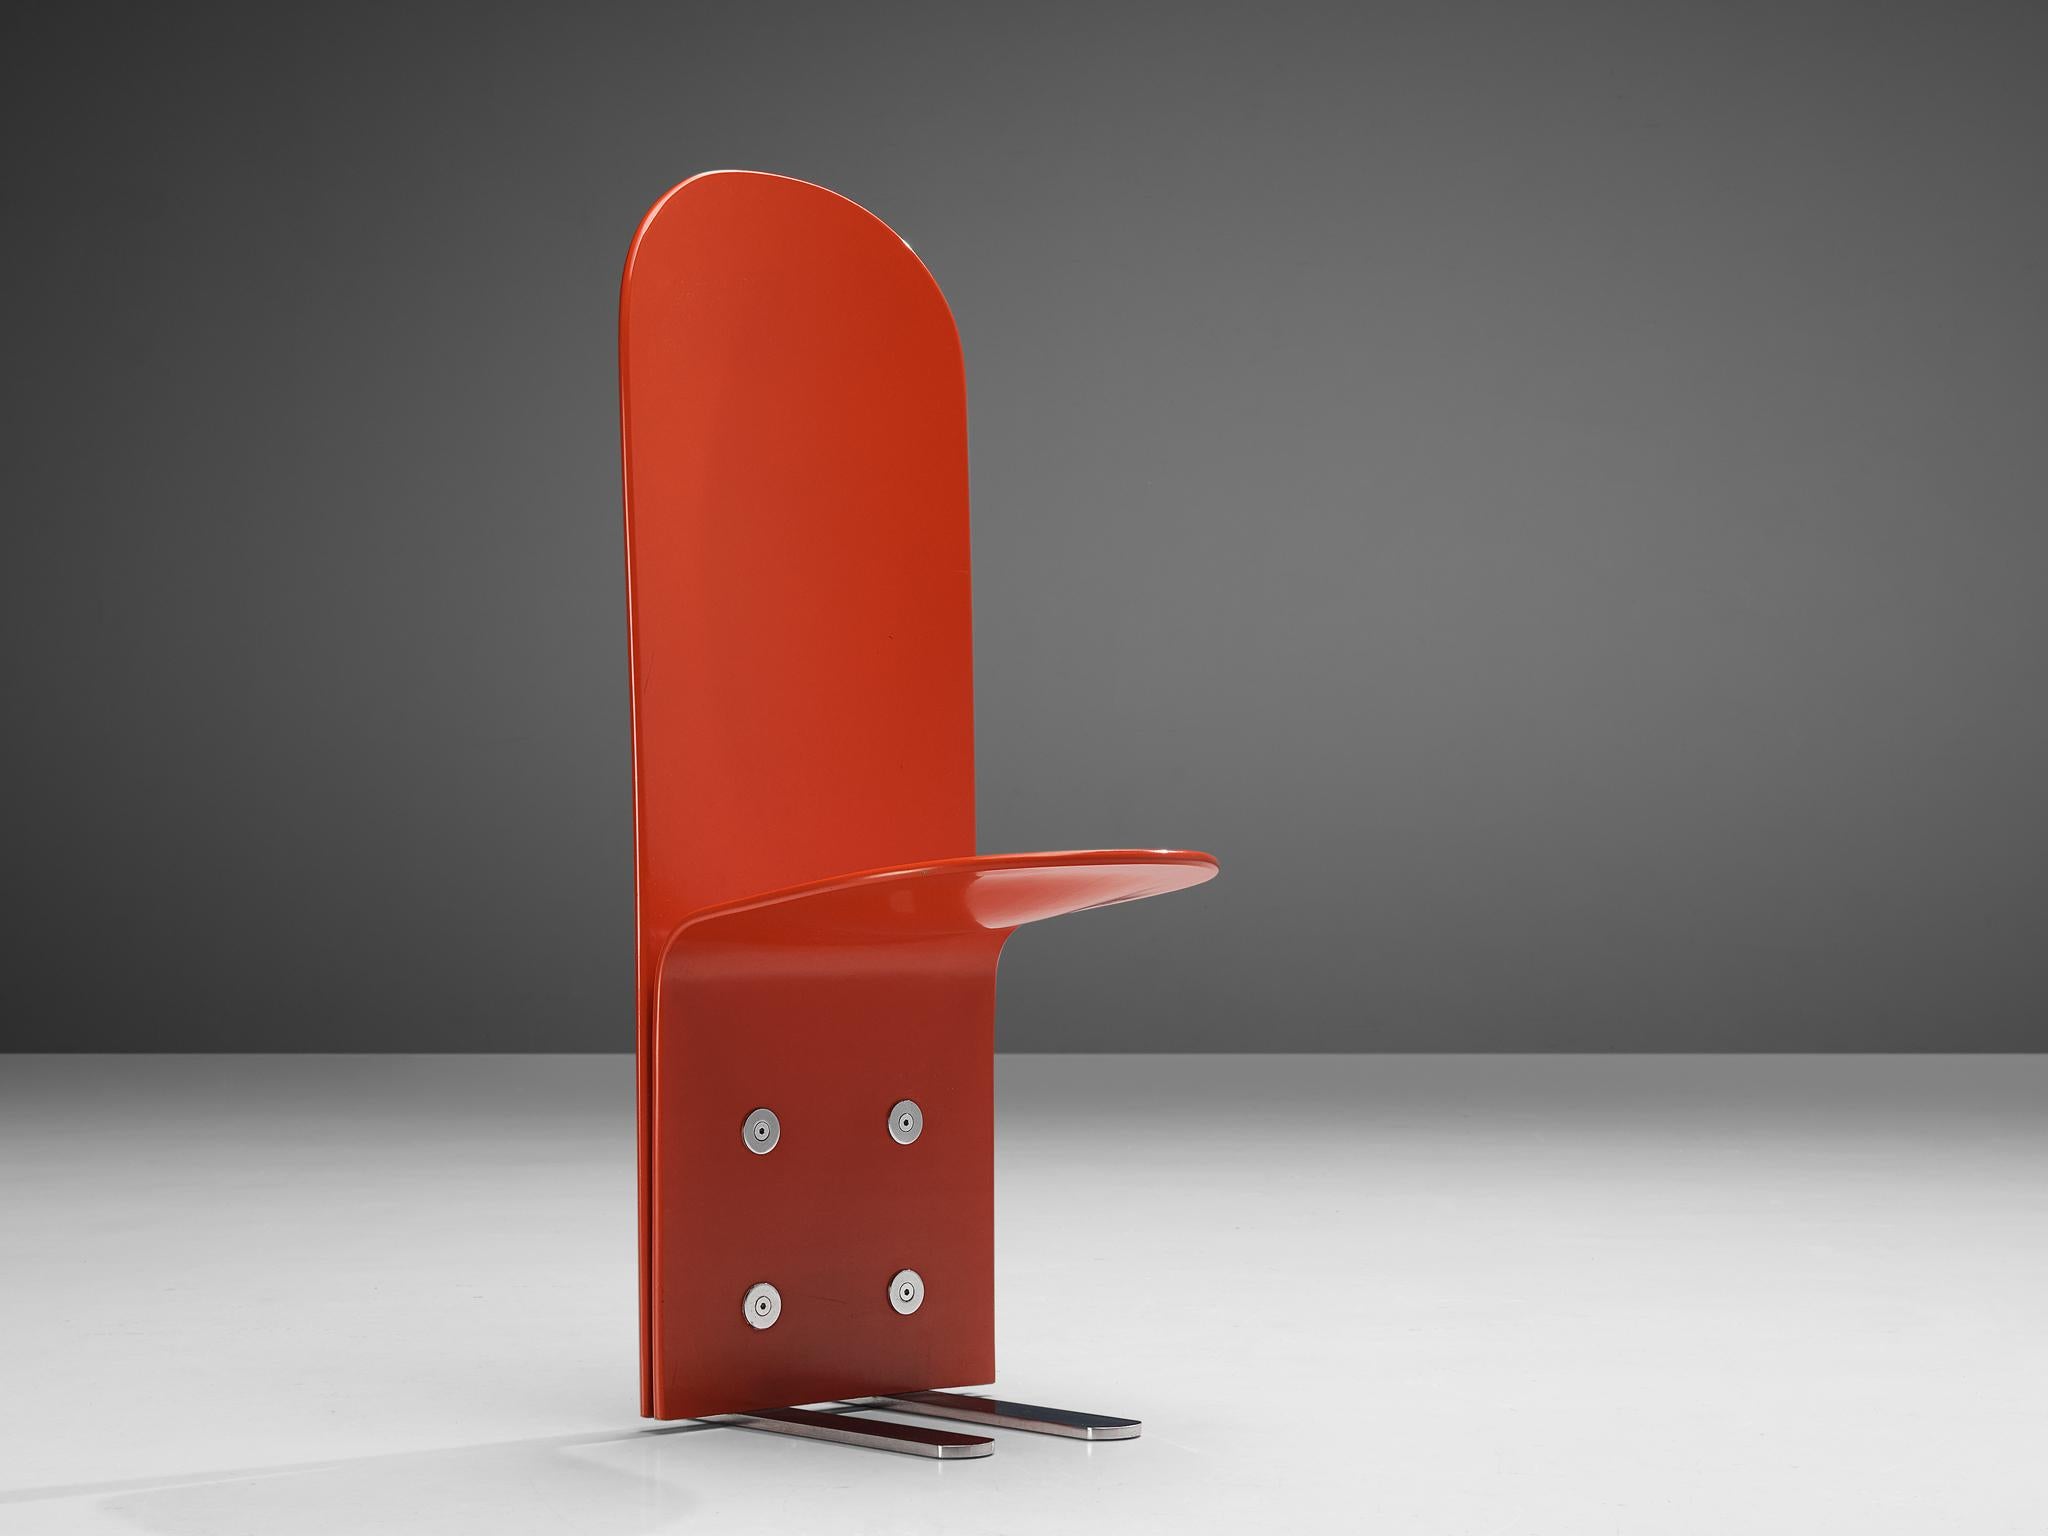 Luigi Saccardo für Arrmet, Esszimmerstuhl, Modell 'Pelicano', lackiertes Sperrholz, verchromtes Metall, 1970er Jahre

Exzentrischer Stuhl aus rot lackiertem Sperrholz. Die auffallend hohe Rückenlehne verleiht diesem Stuhl ein stattliches Aussehen.